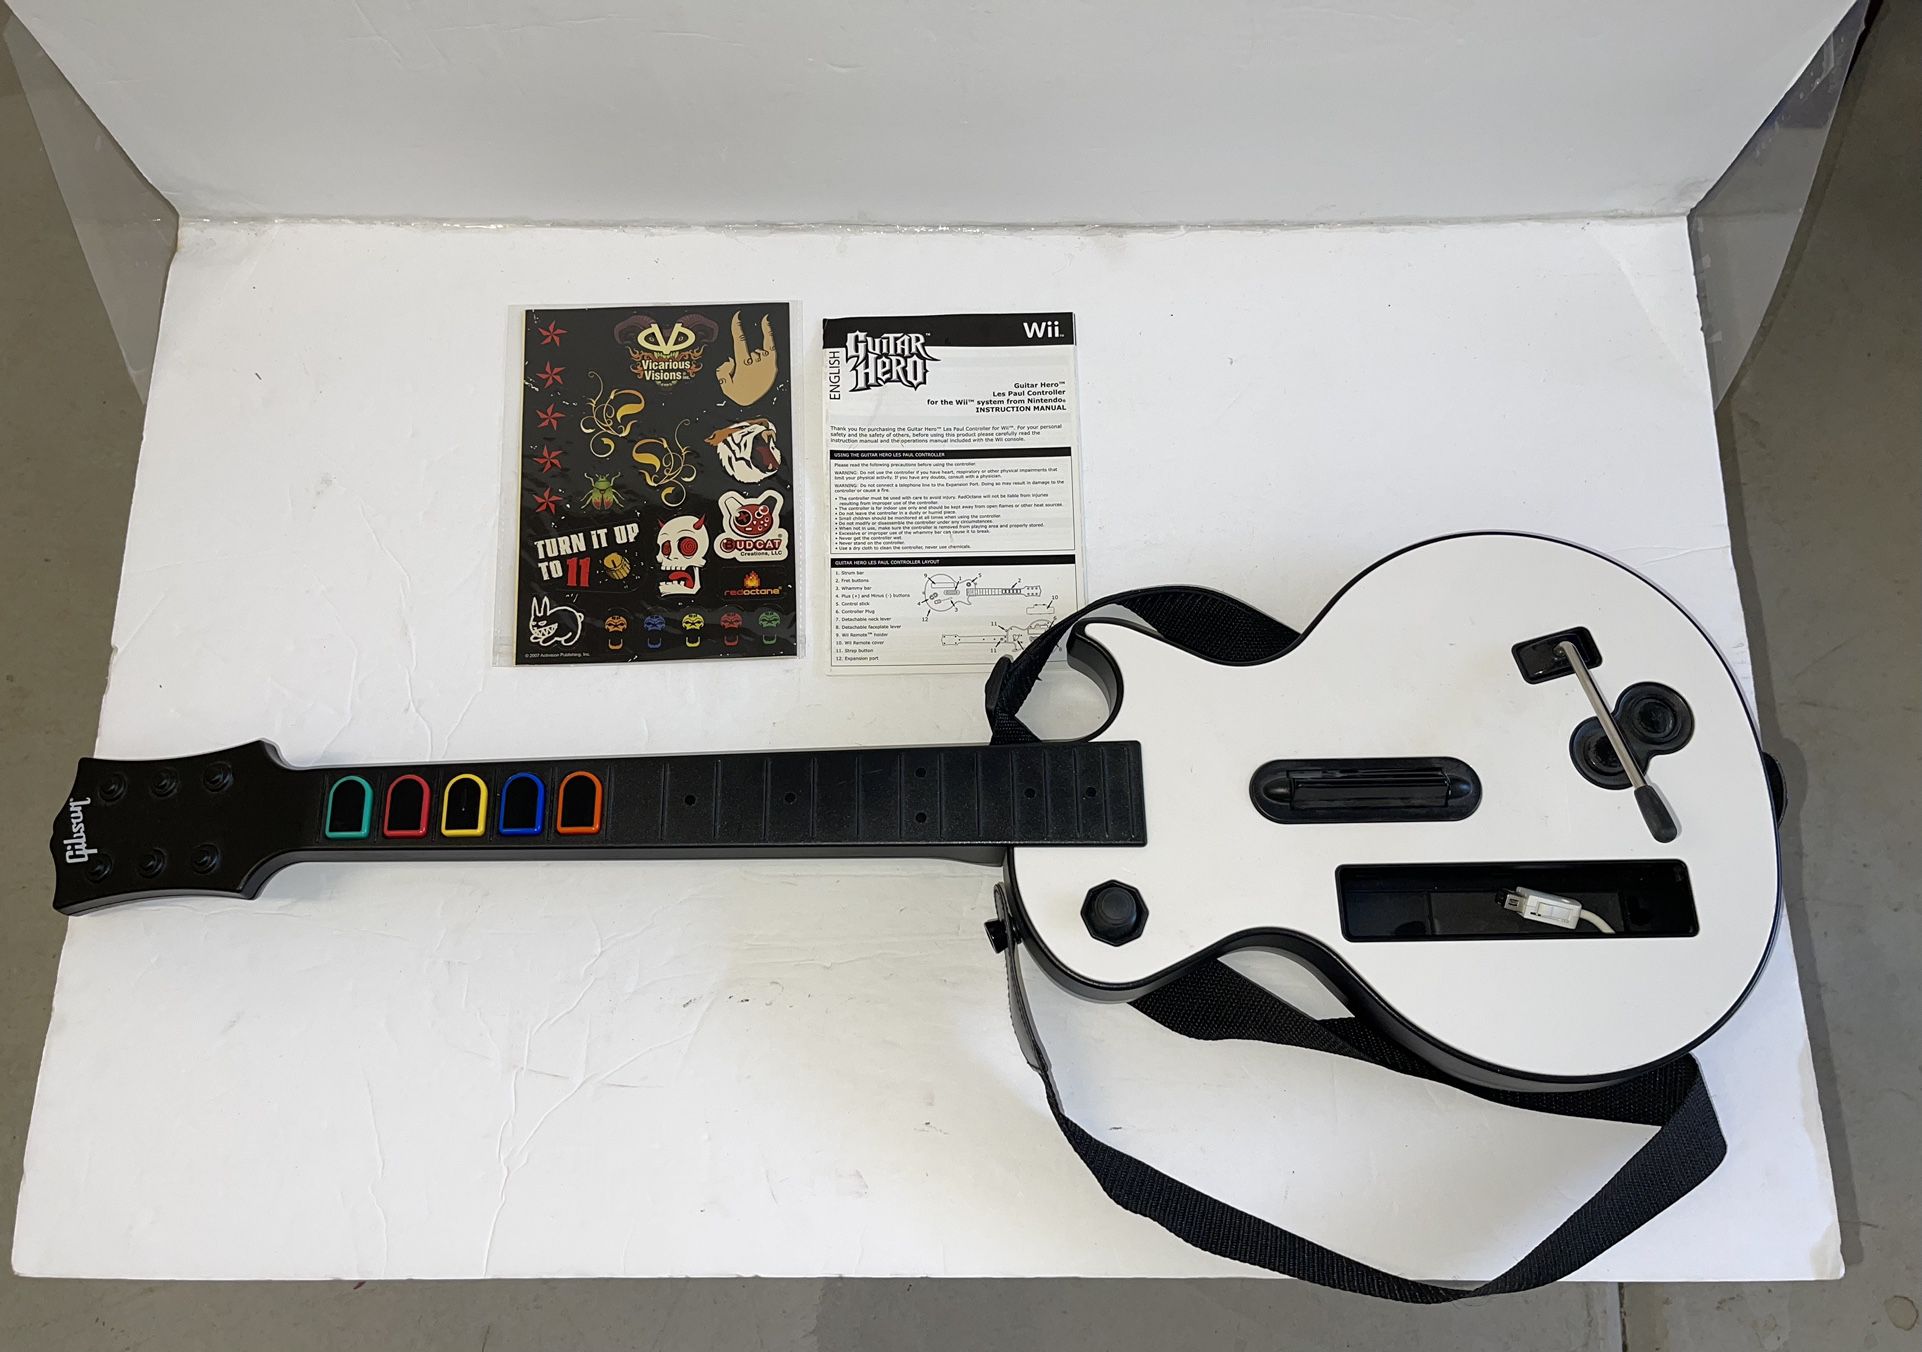 Nintendo Wii Guitar Hero Les Paul Guitar Complete